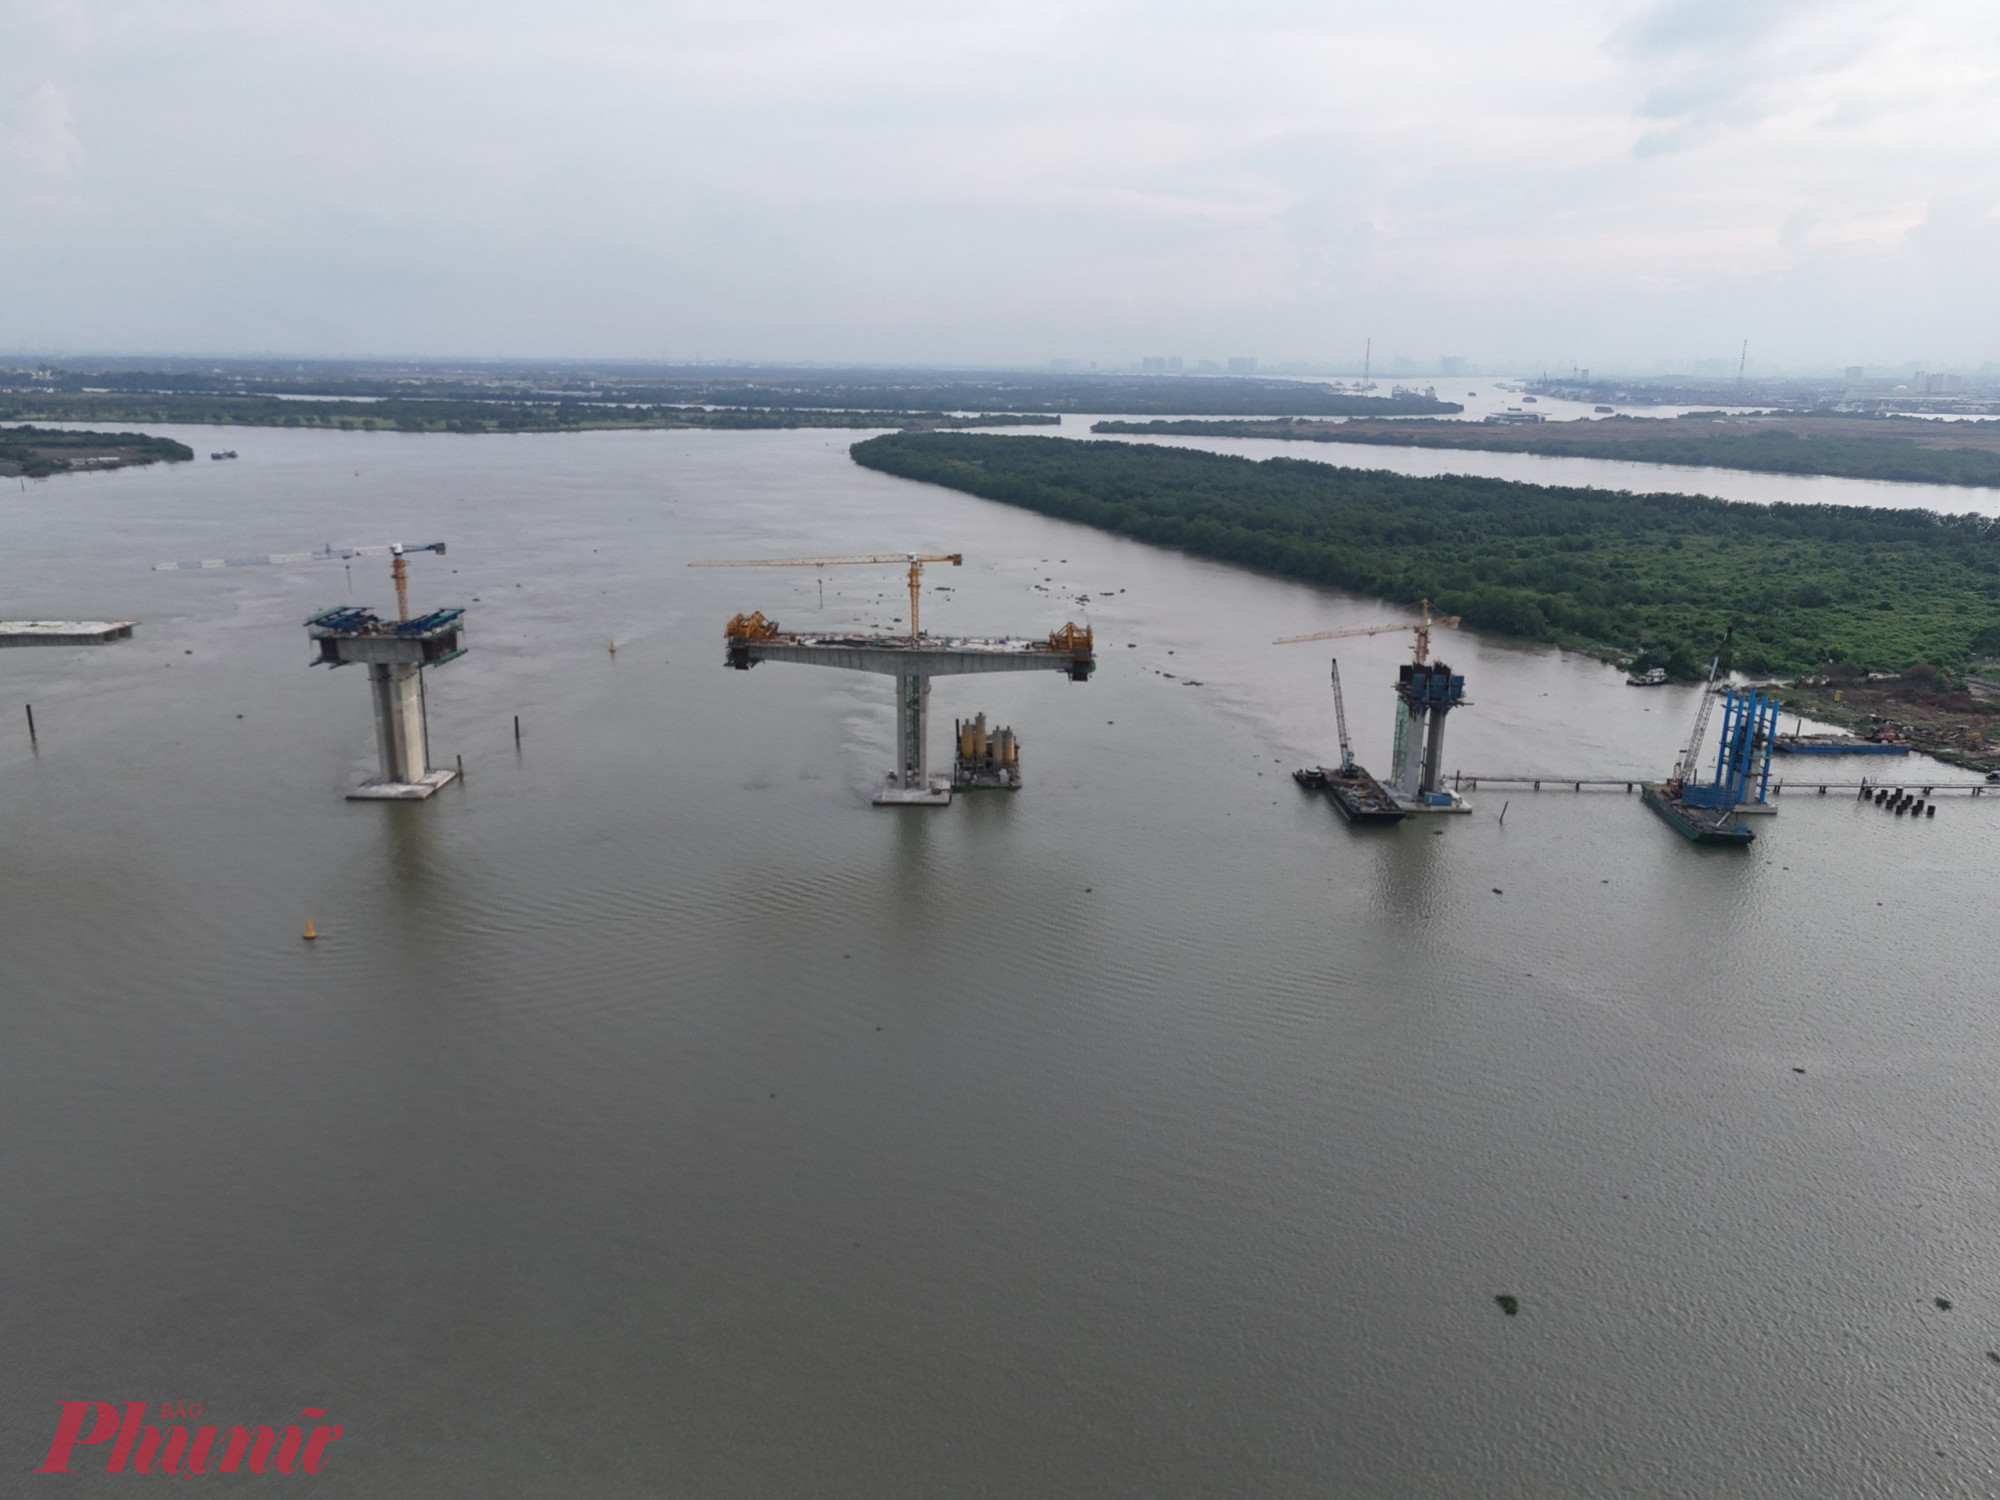 Cầu Nhơn Trạch dài 2,6km, rộng 19,5m (bắc qua sông Đồng Nai) thuộc gói thầu CW1 đạt 70% khối lượng, được khởi công vào tháng 9/2022, dự kiến hoàn thành dịp 30/4/2025. 